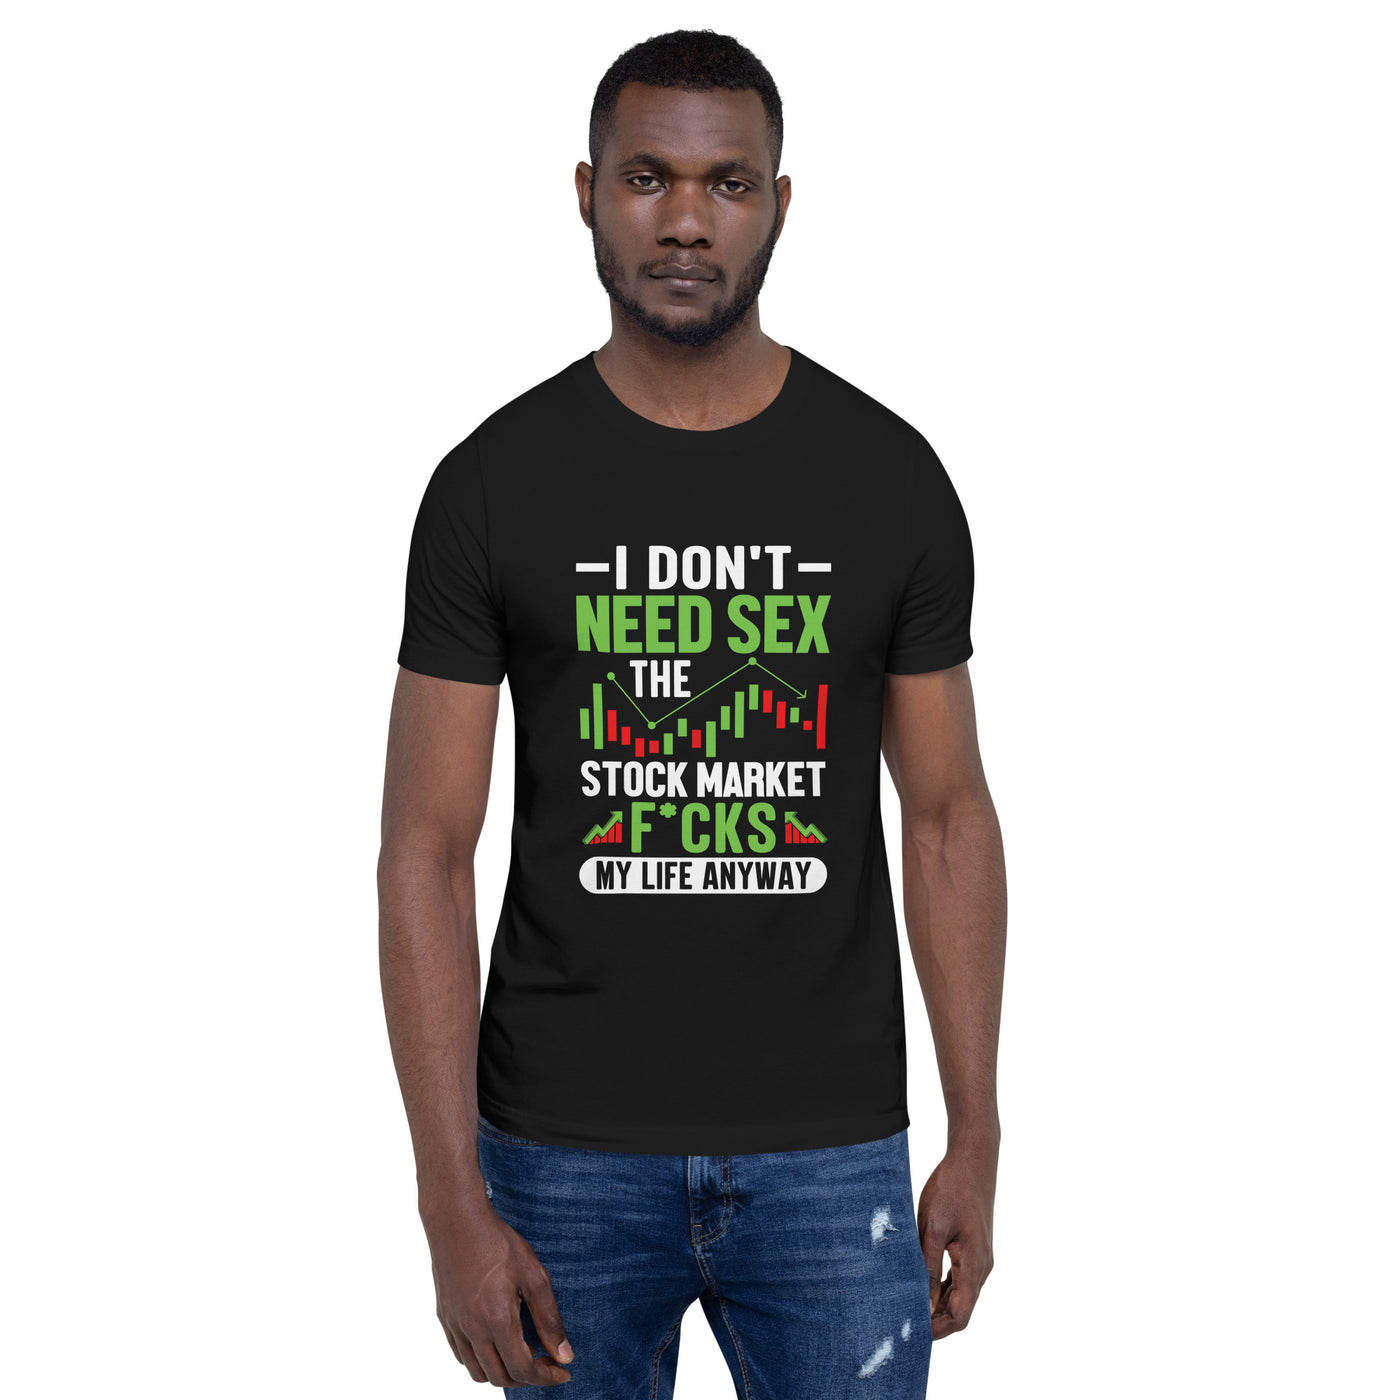 I don't Need sex, the Stock Market Fucks my life anyway - Unisex t-shirt